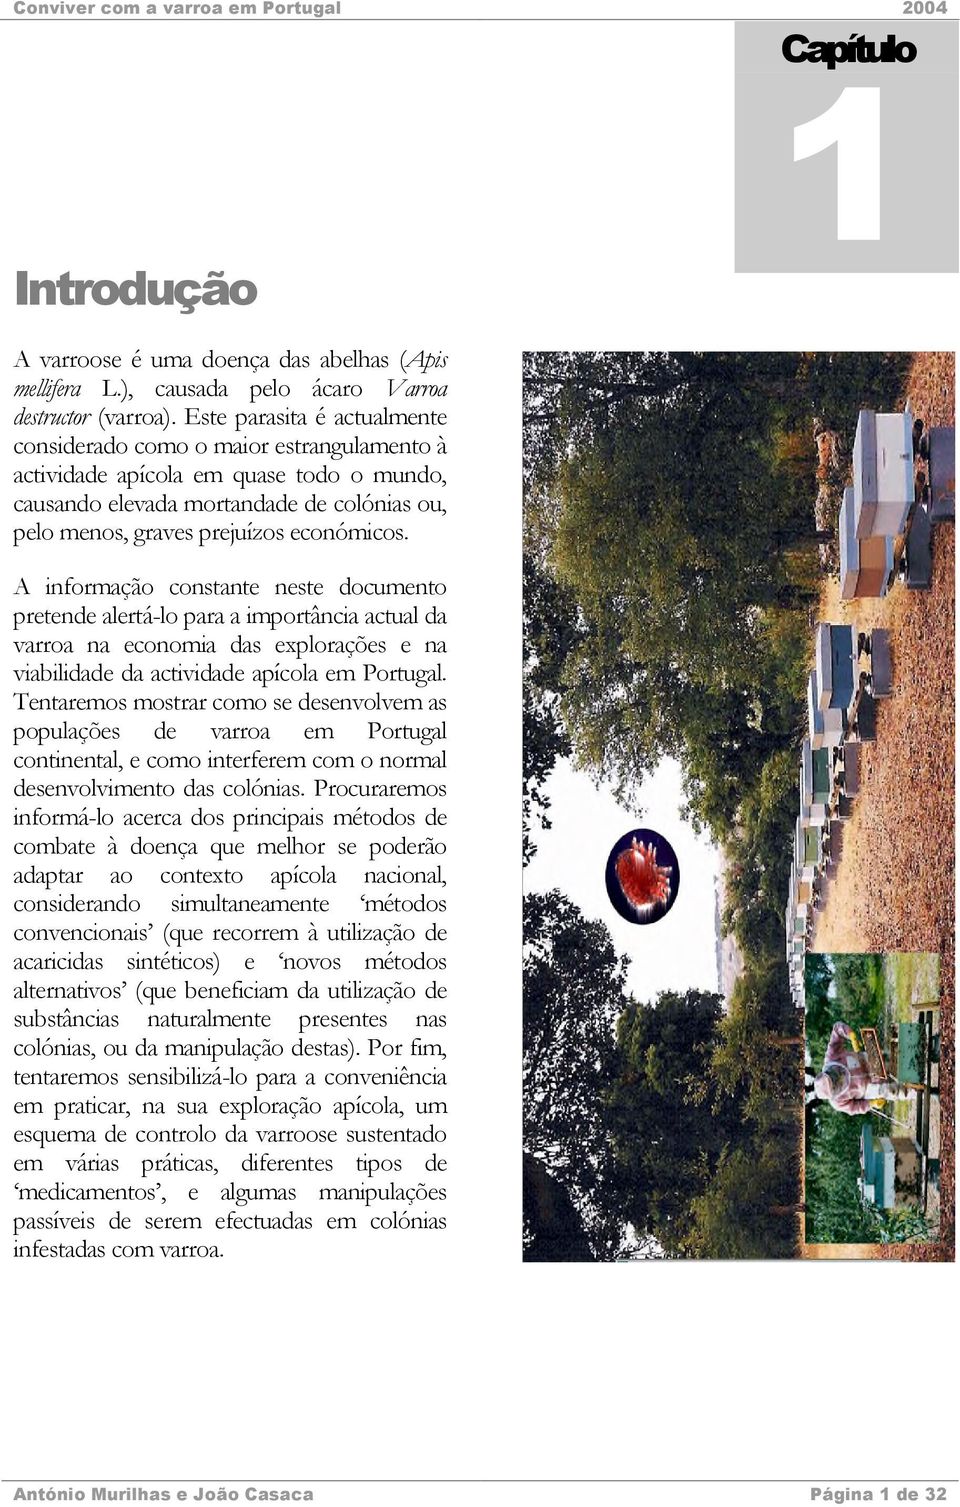 A informação constante neste documento pretende alertá-lo para a importância actual da varroa na economia das explorações e na viabilidade da actividade apícola em Portugal.